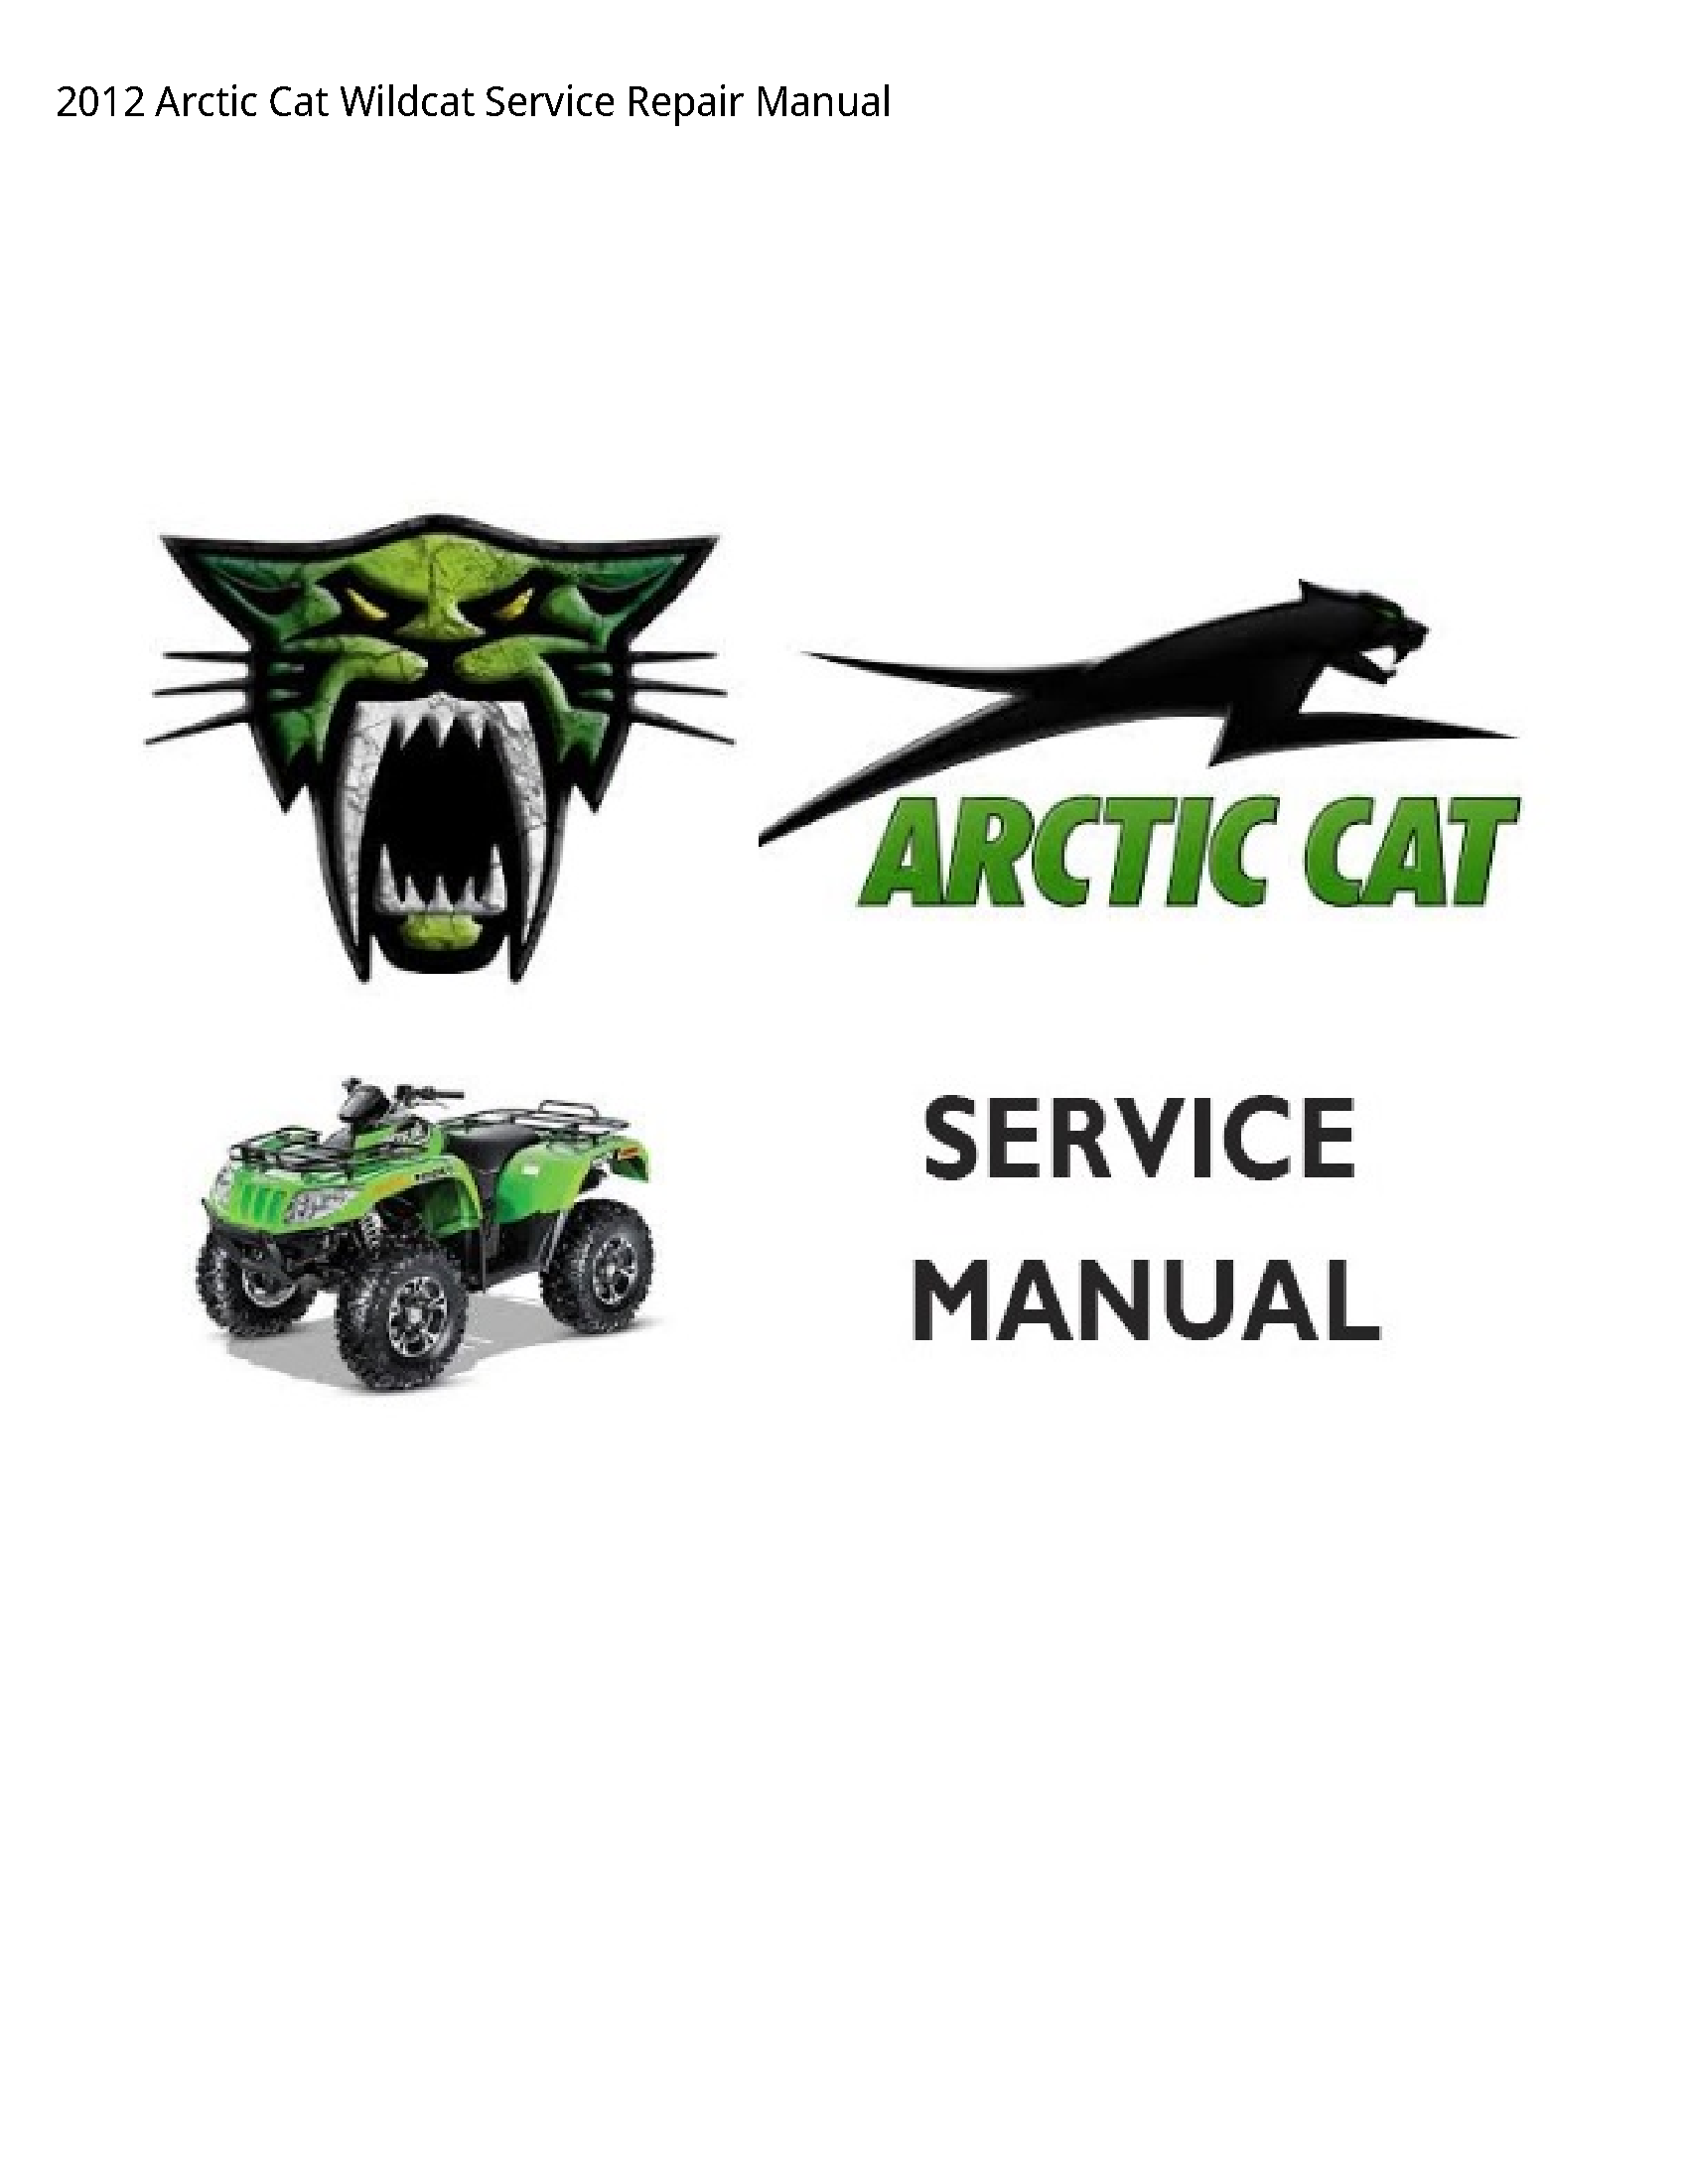 Arctic Cat Wildcat manual